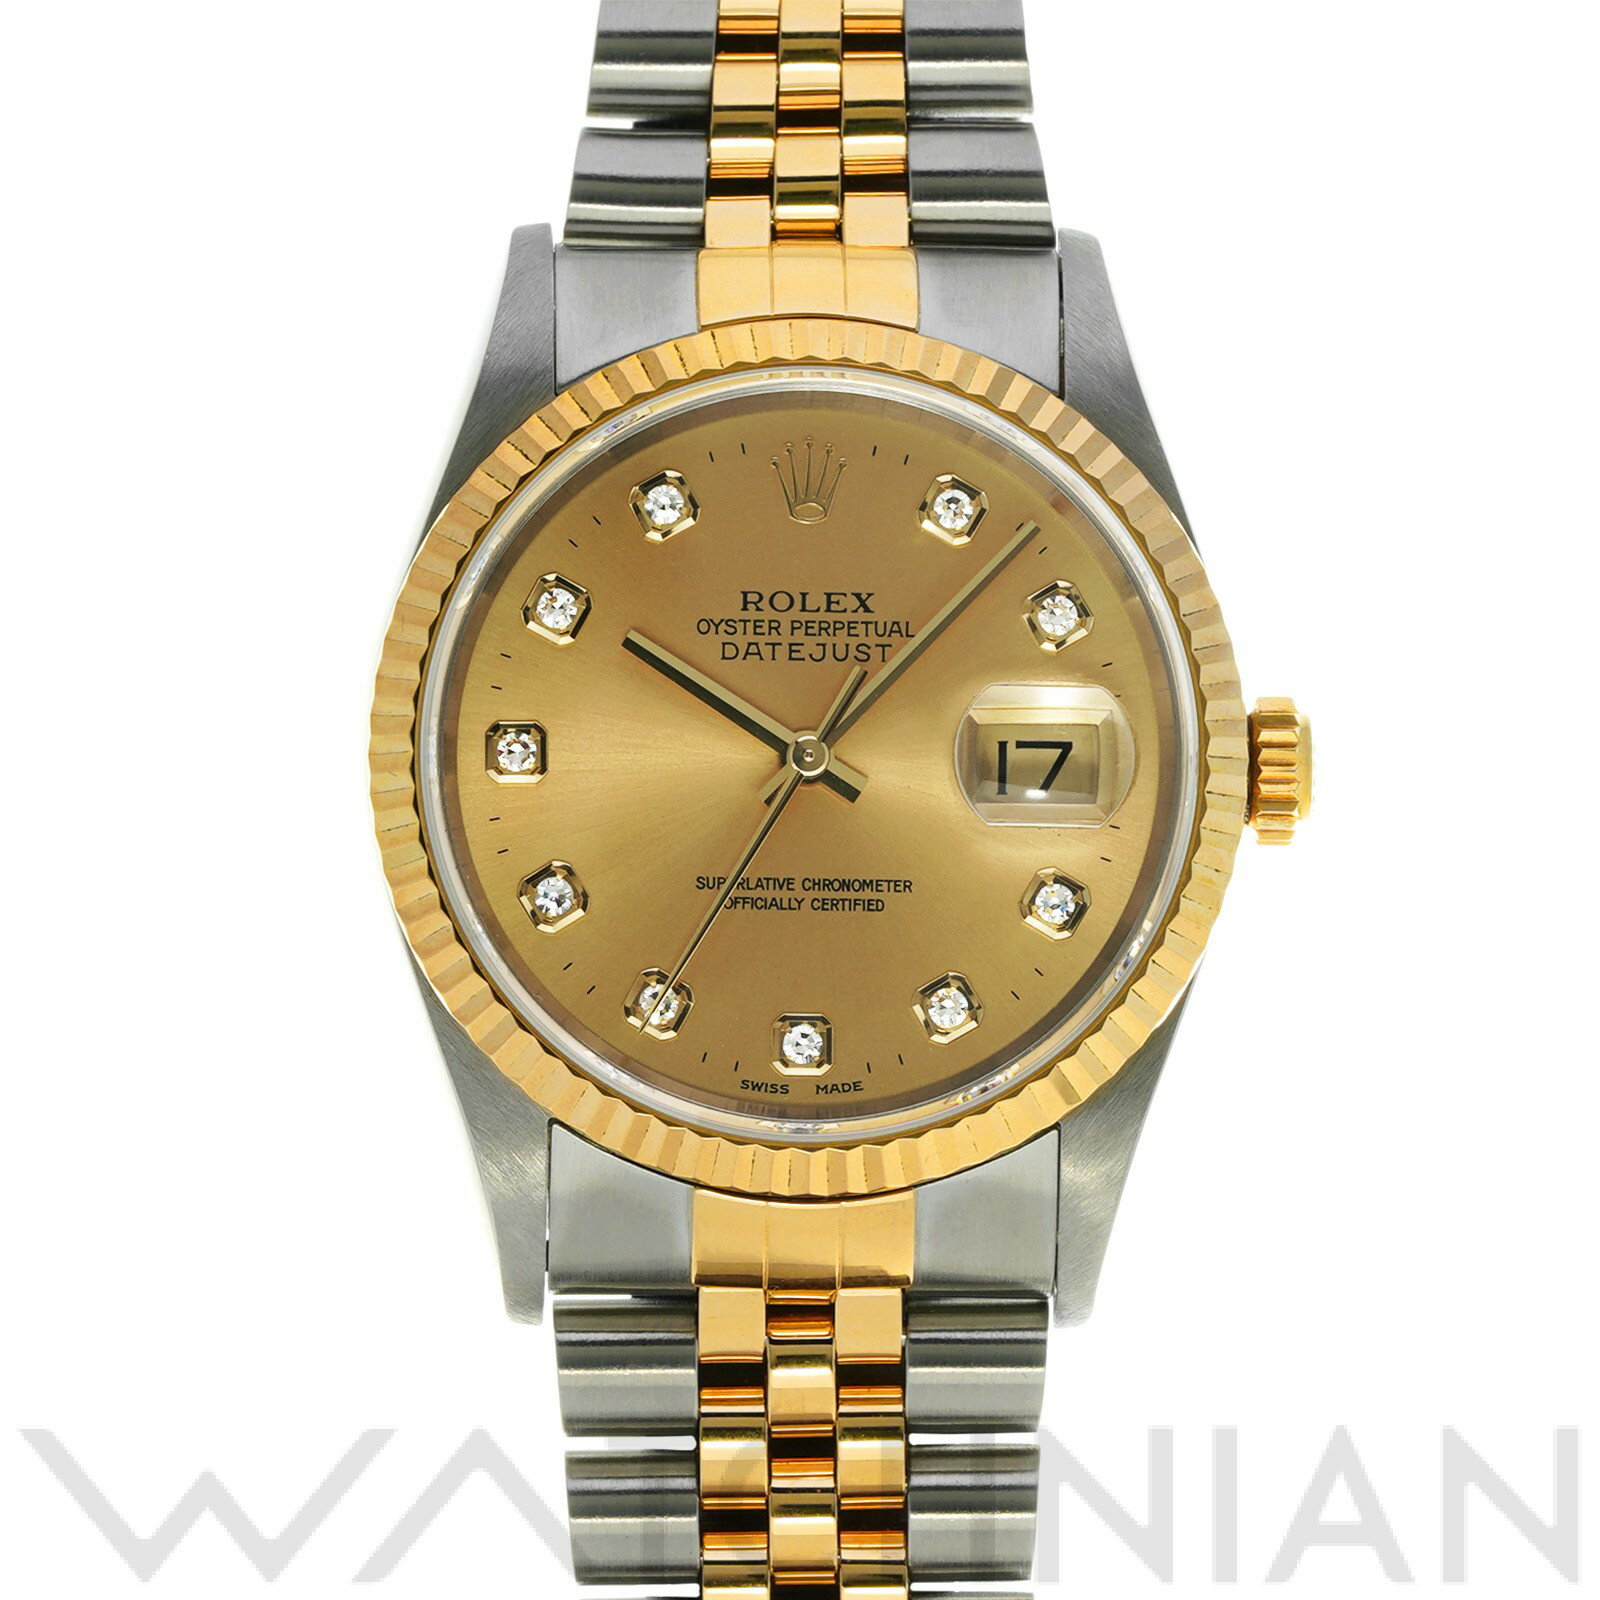 【中古】 ロレックス ROLEX デイトジャスト 16233G T番(1997年頃製造) シャンパン/ダイヤモンド メンズ 腕時計